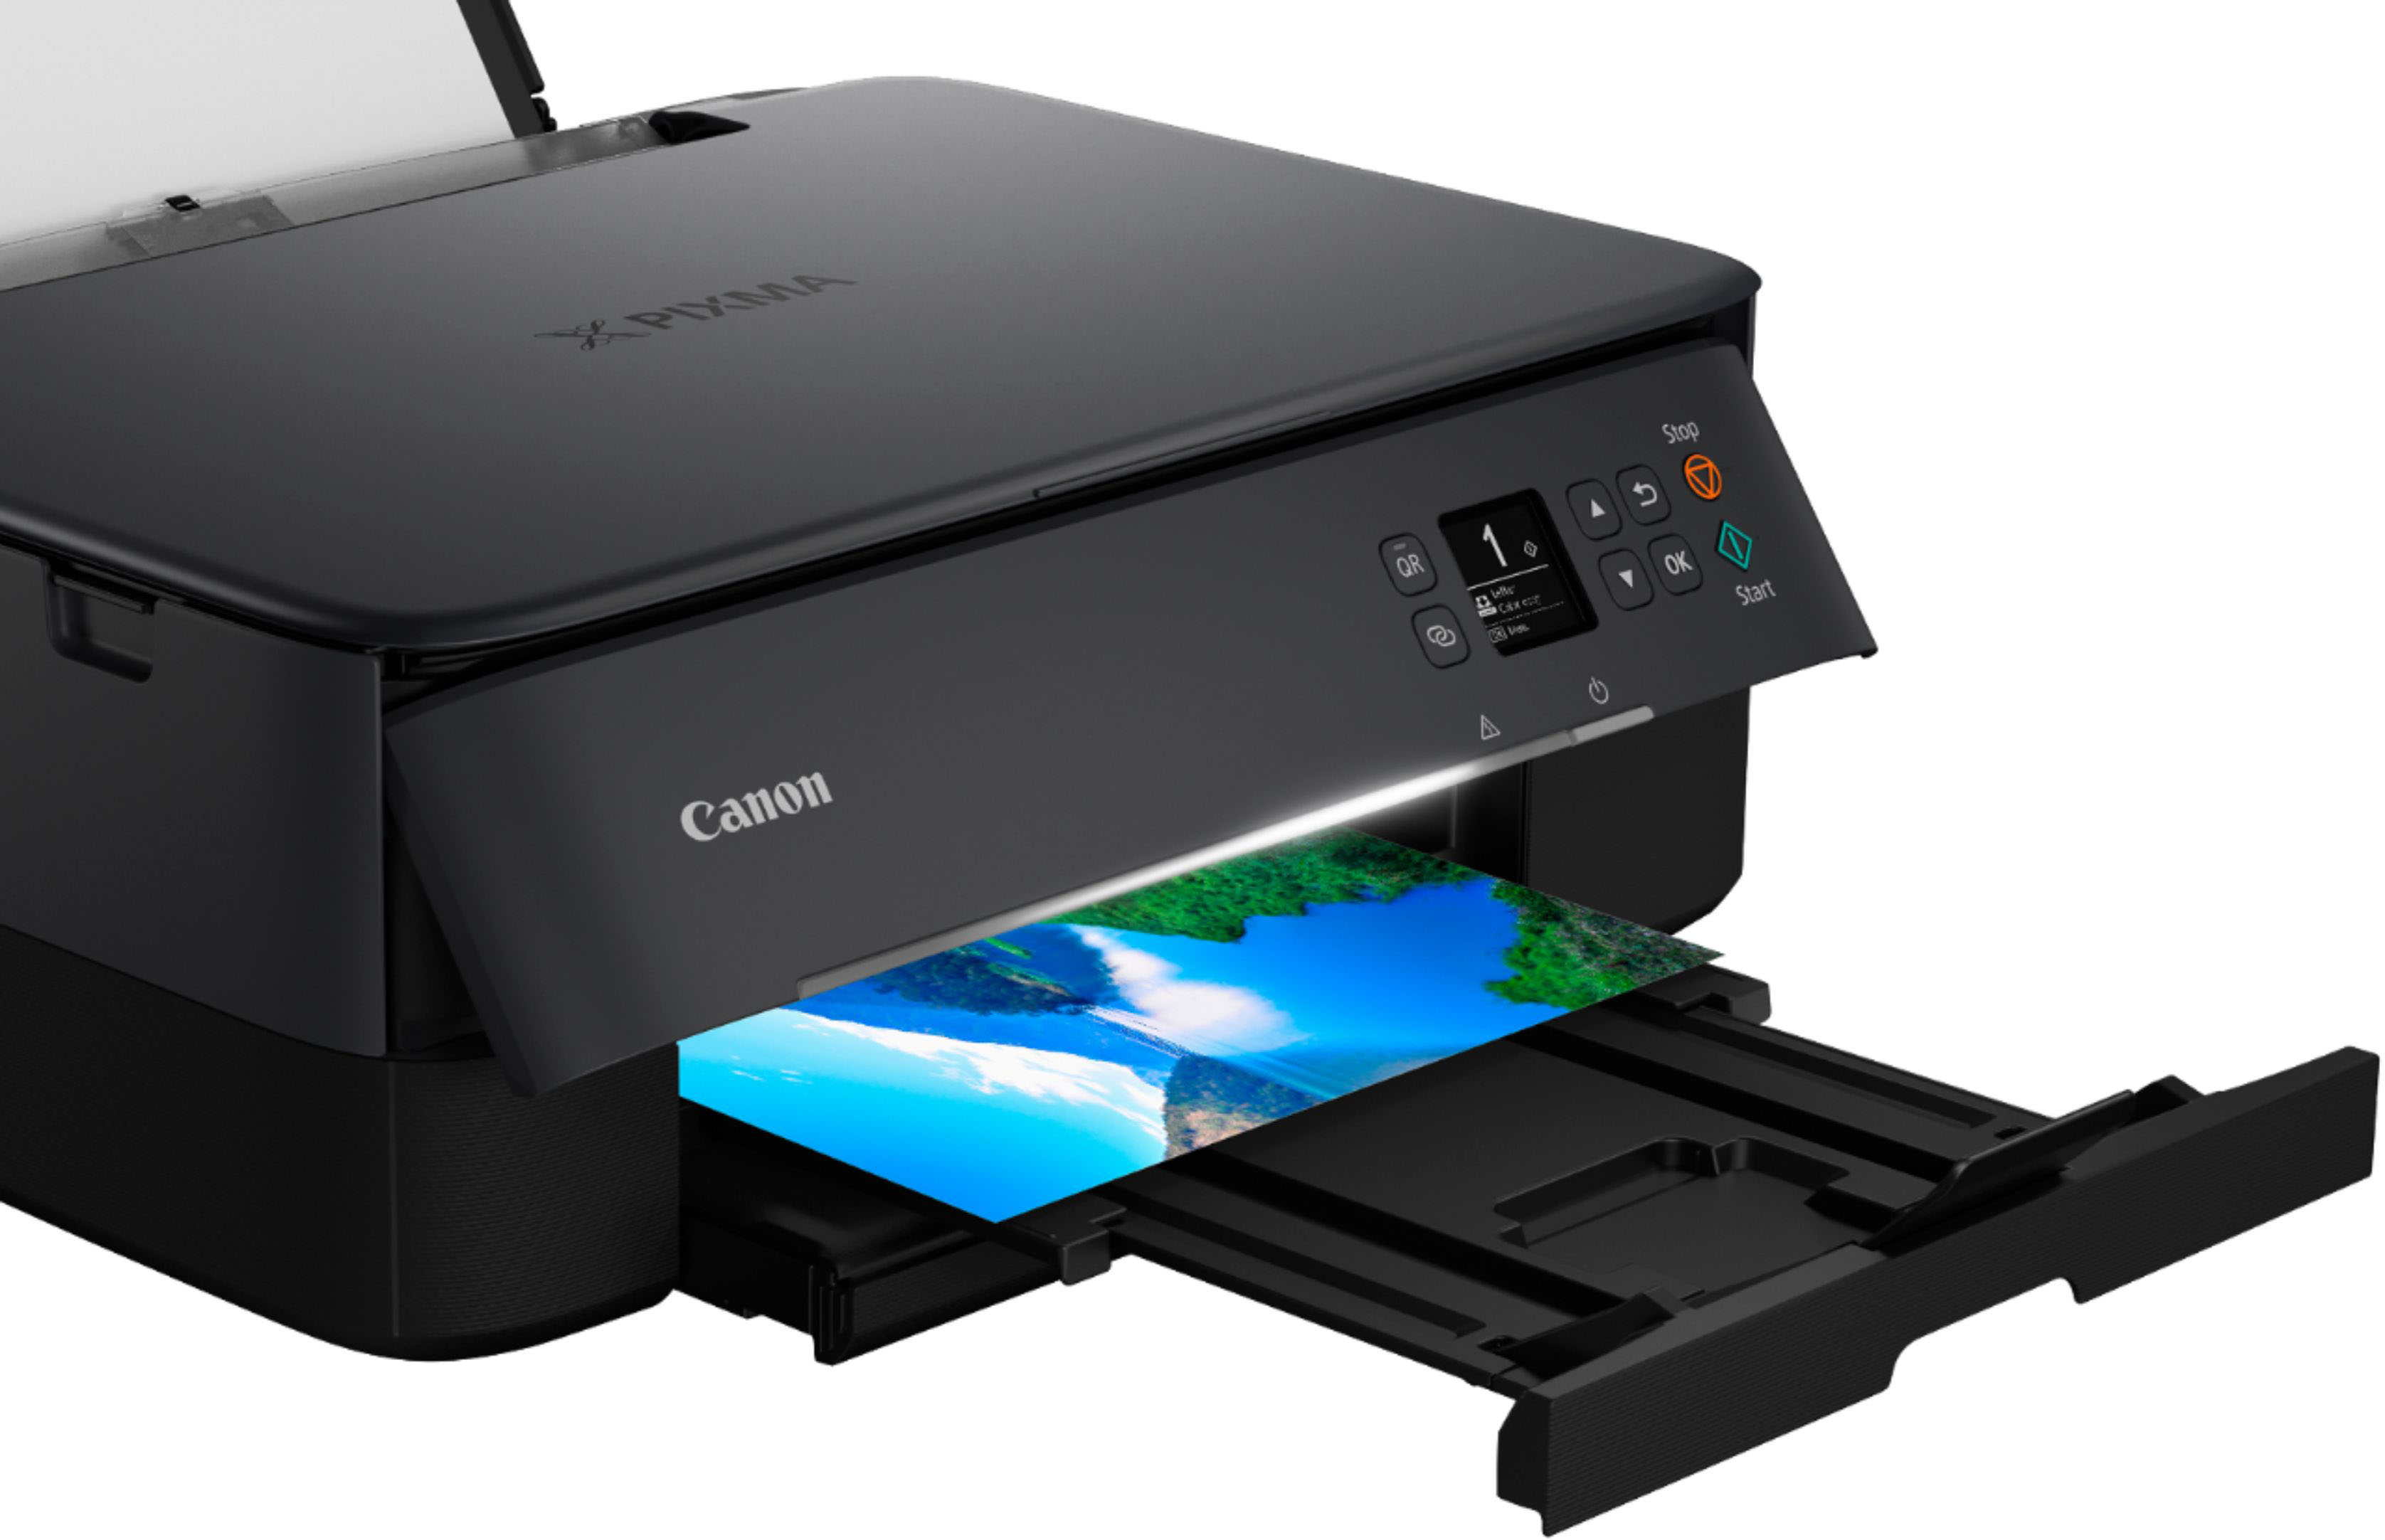 Canon TS6420a Wireless All-In-One Inkjet Printer Black - Best Buy